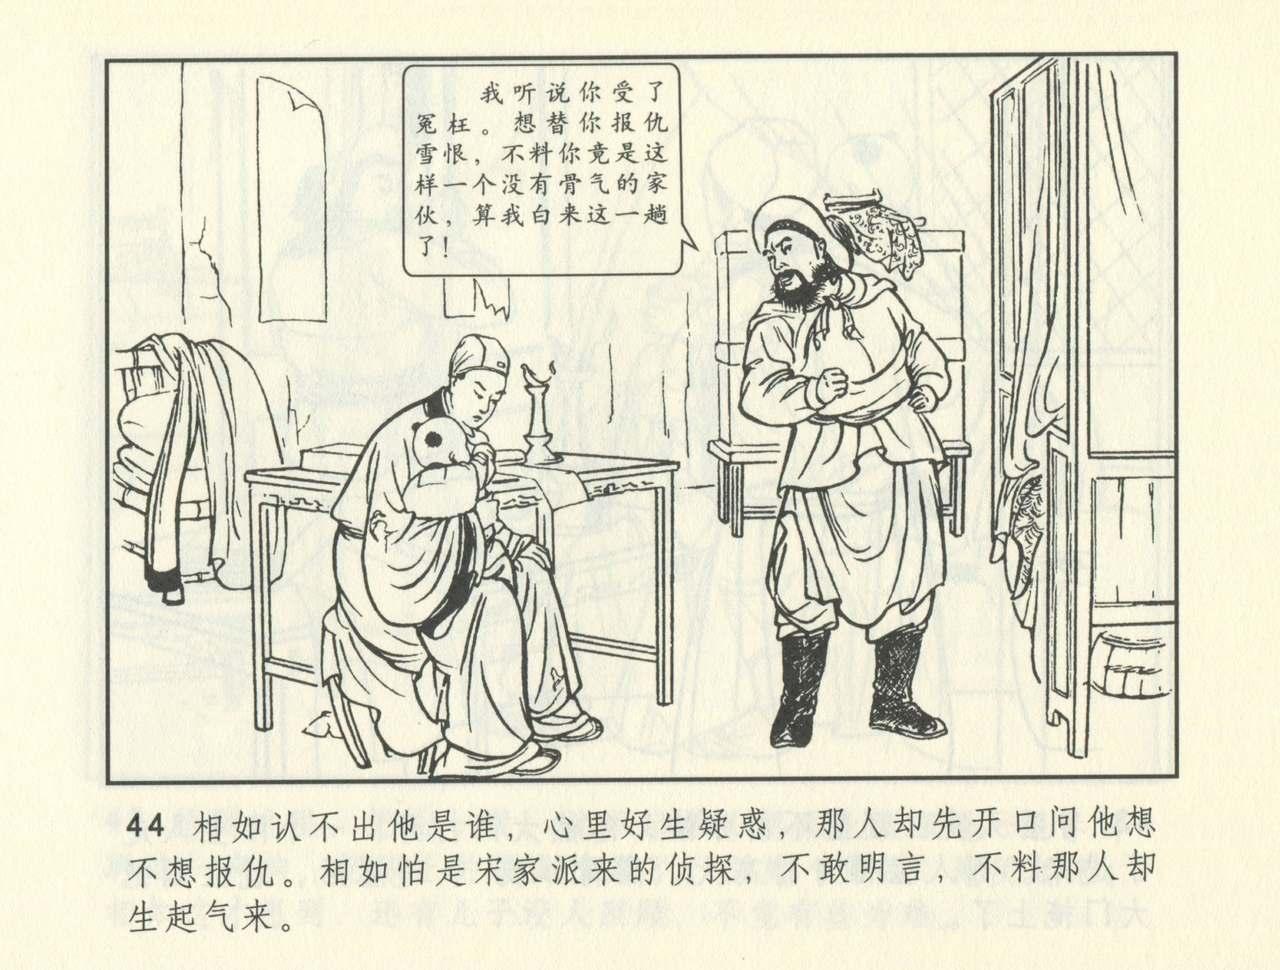 聊斋志异 张玮等绘 天津人民美术出版社 卷二十一 ~ 三十 384